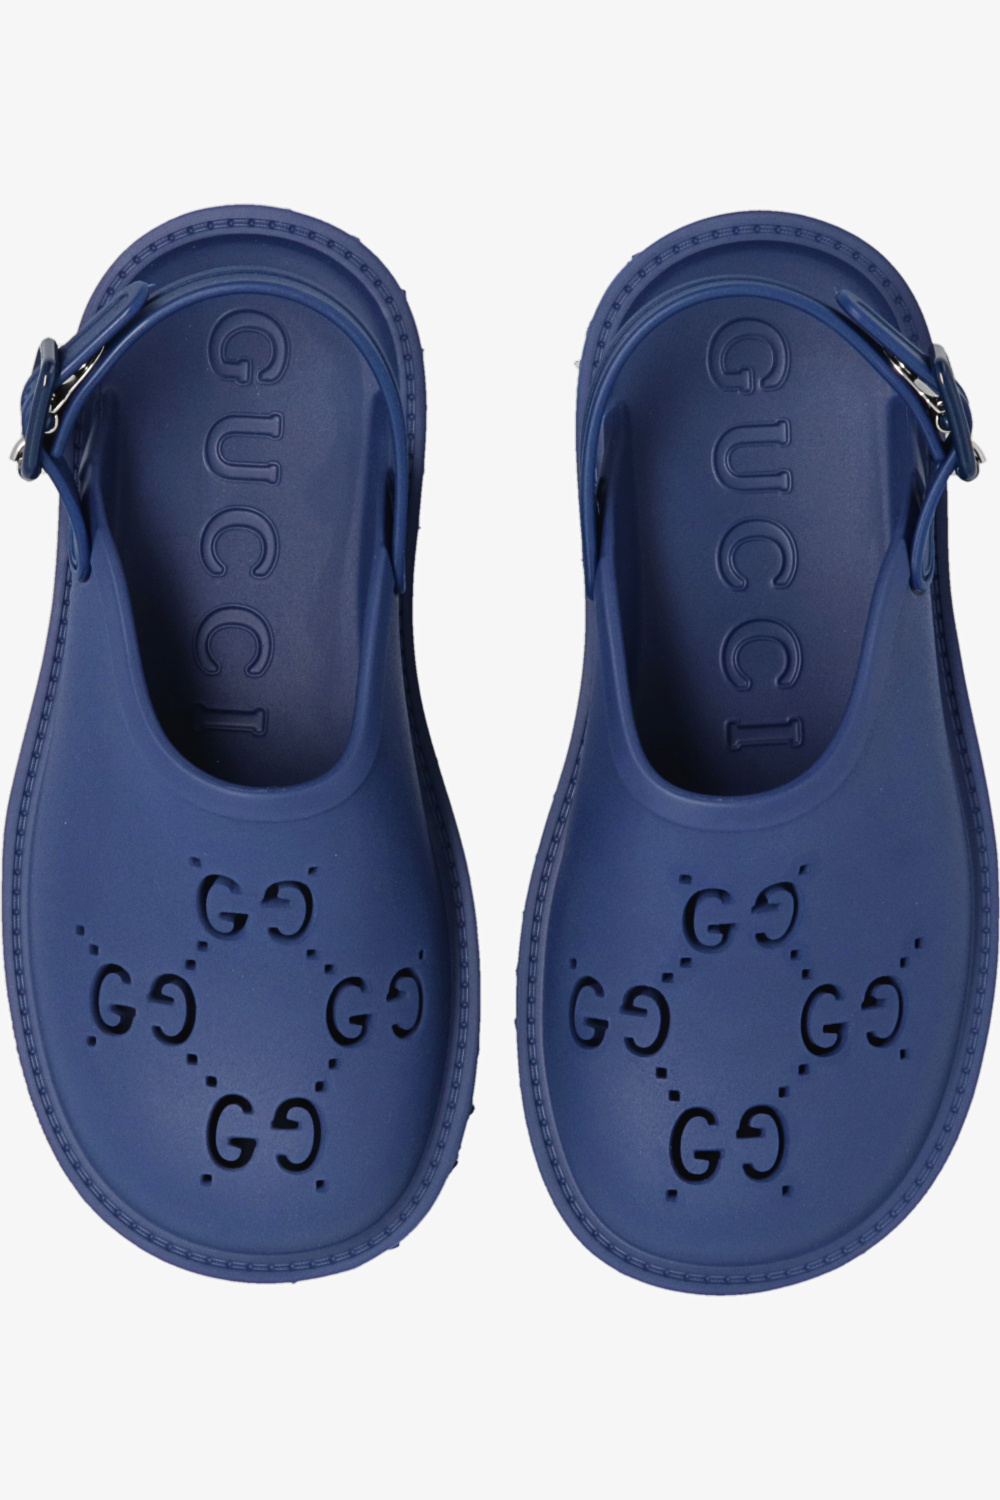 gucci Interlocking Kids Rubber sandals